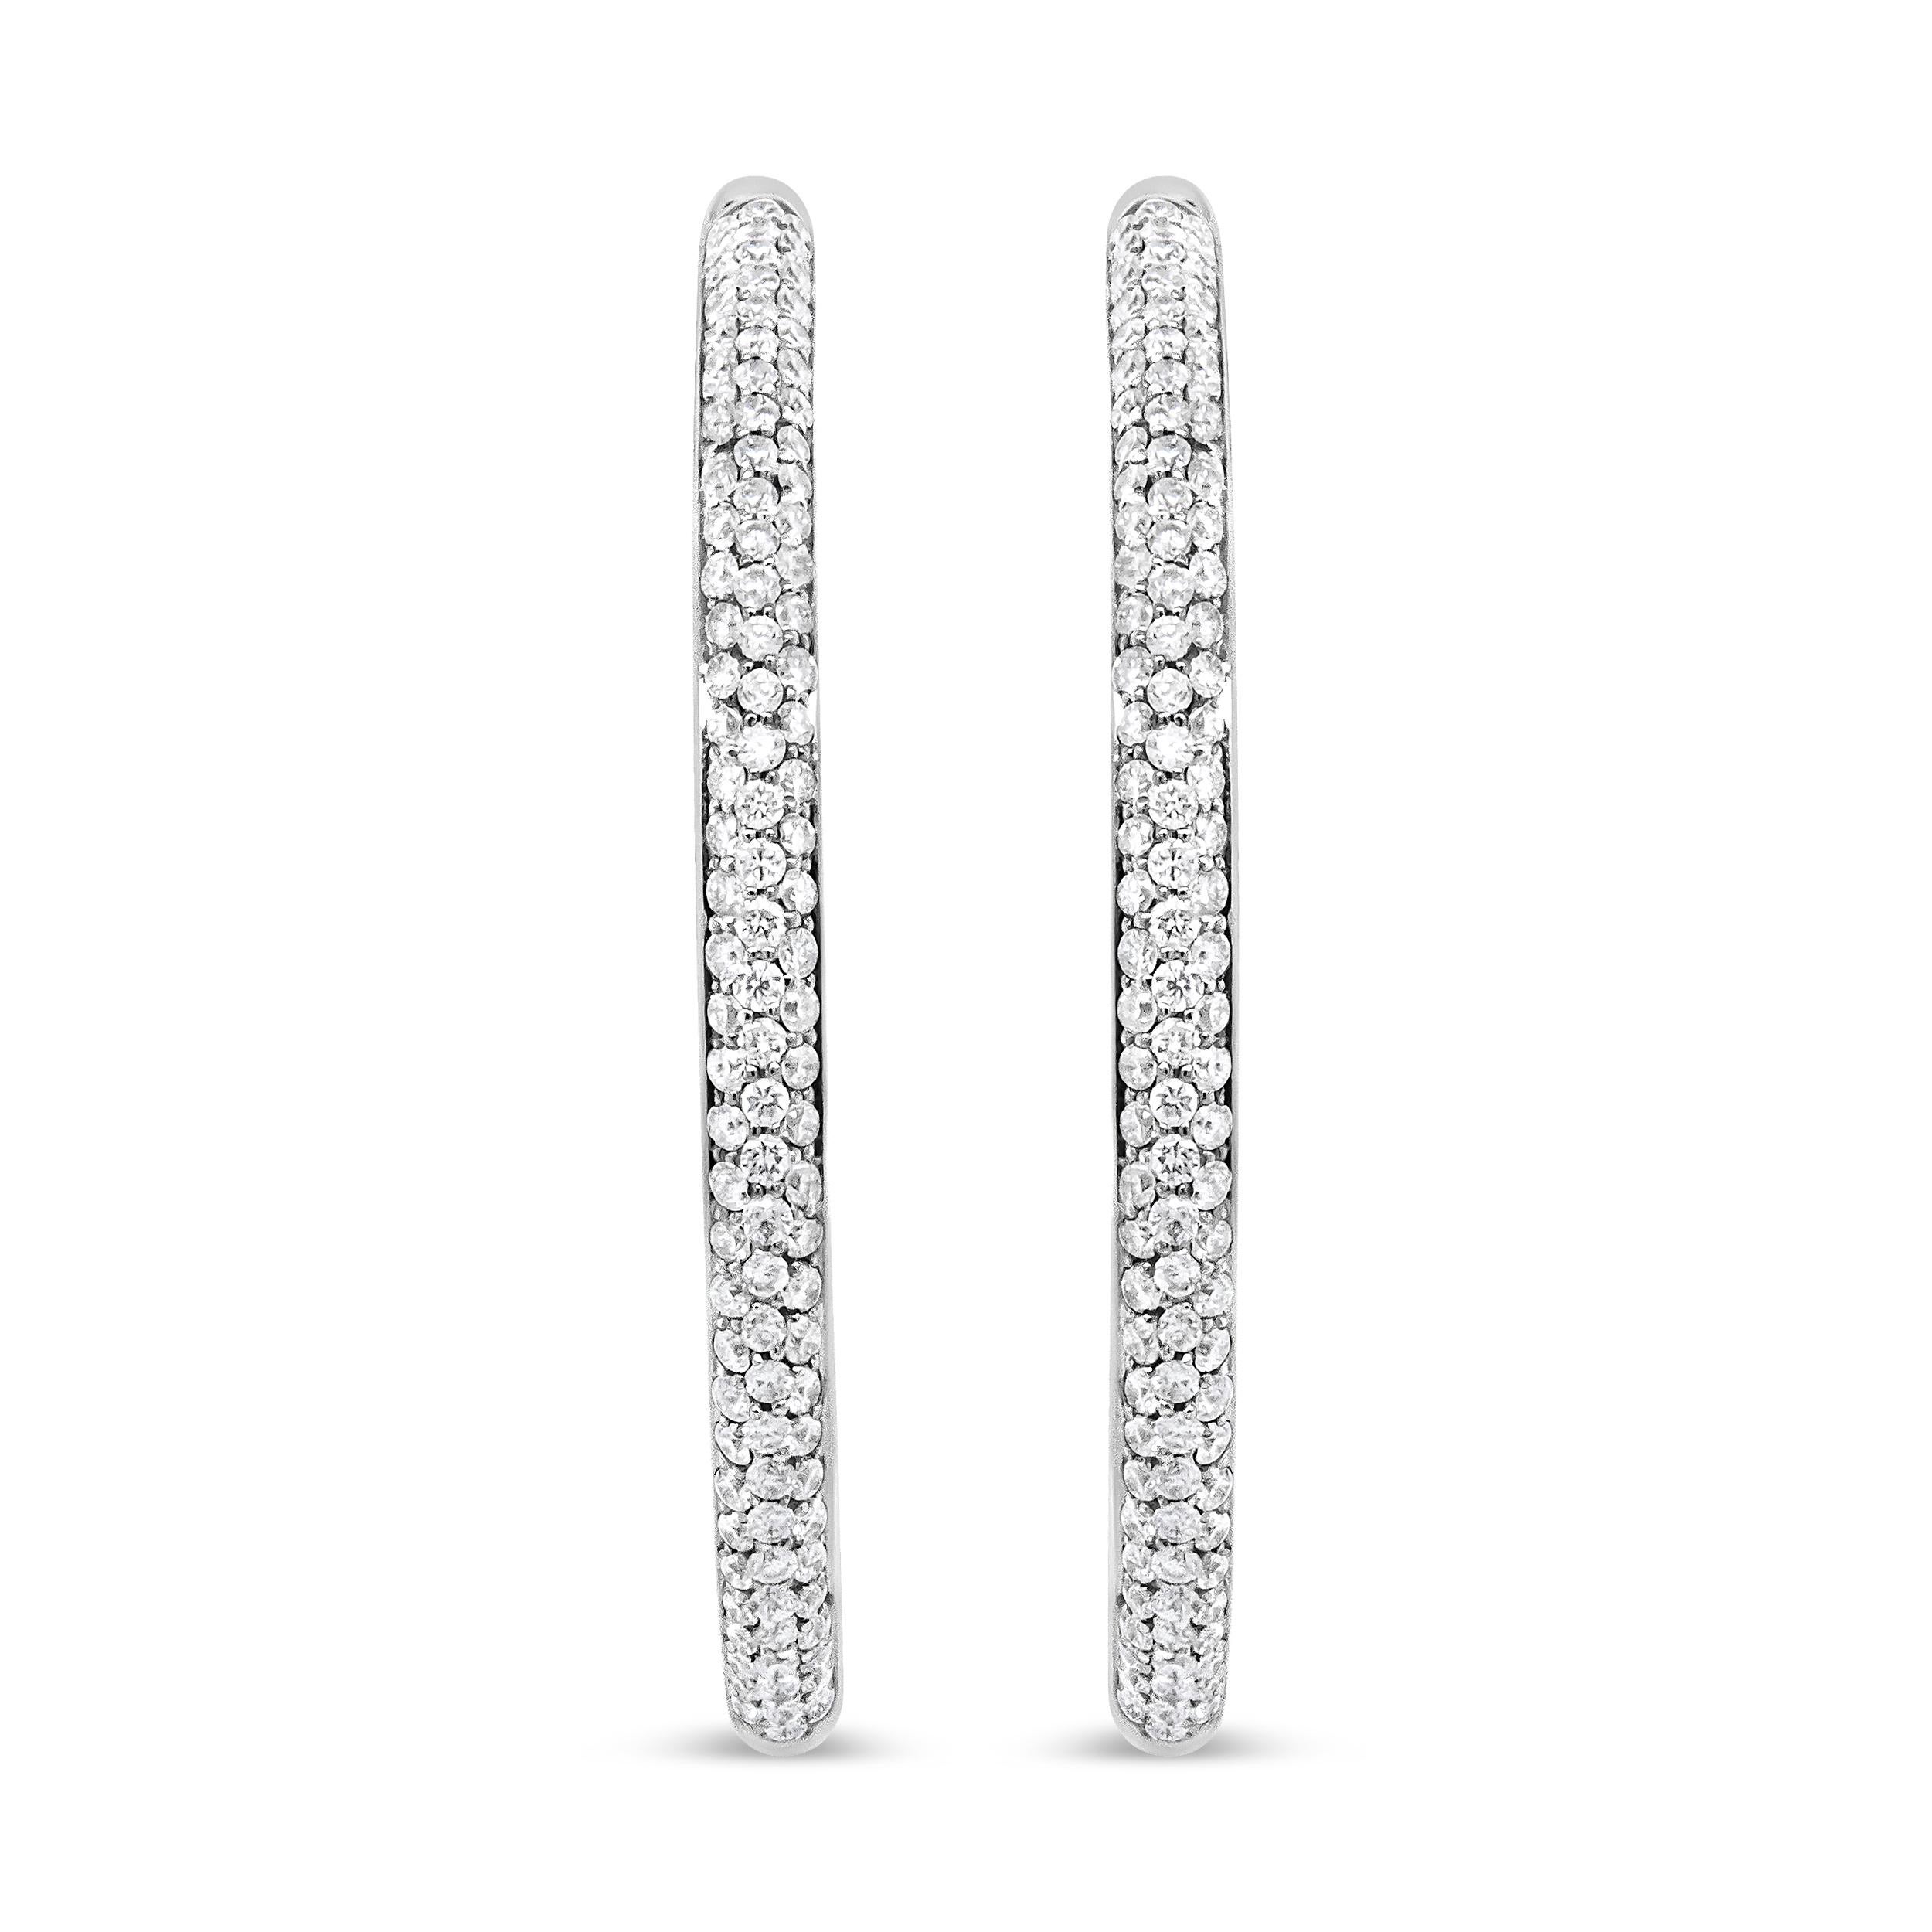 Une version glamour d'un design classique, ces époustouflants anneaux de diamants sont fabriqués dans un luxueux or blanc 18 carats qui étincellera sur vos boucles d'oreilles. L'or reflète magnifiquement les superbes diamants de pureté VS1-VS2 dans